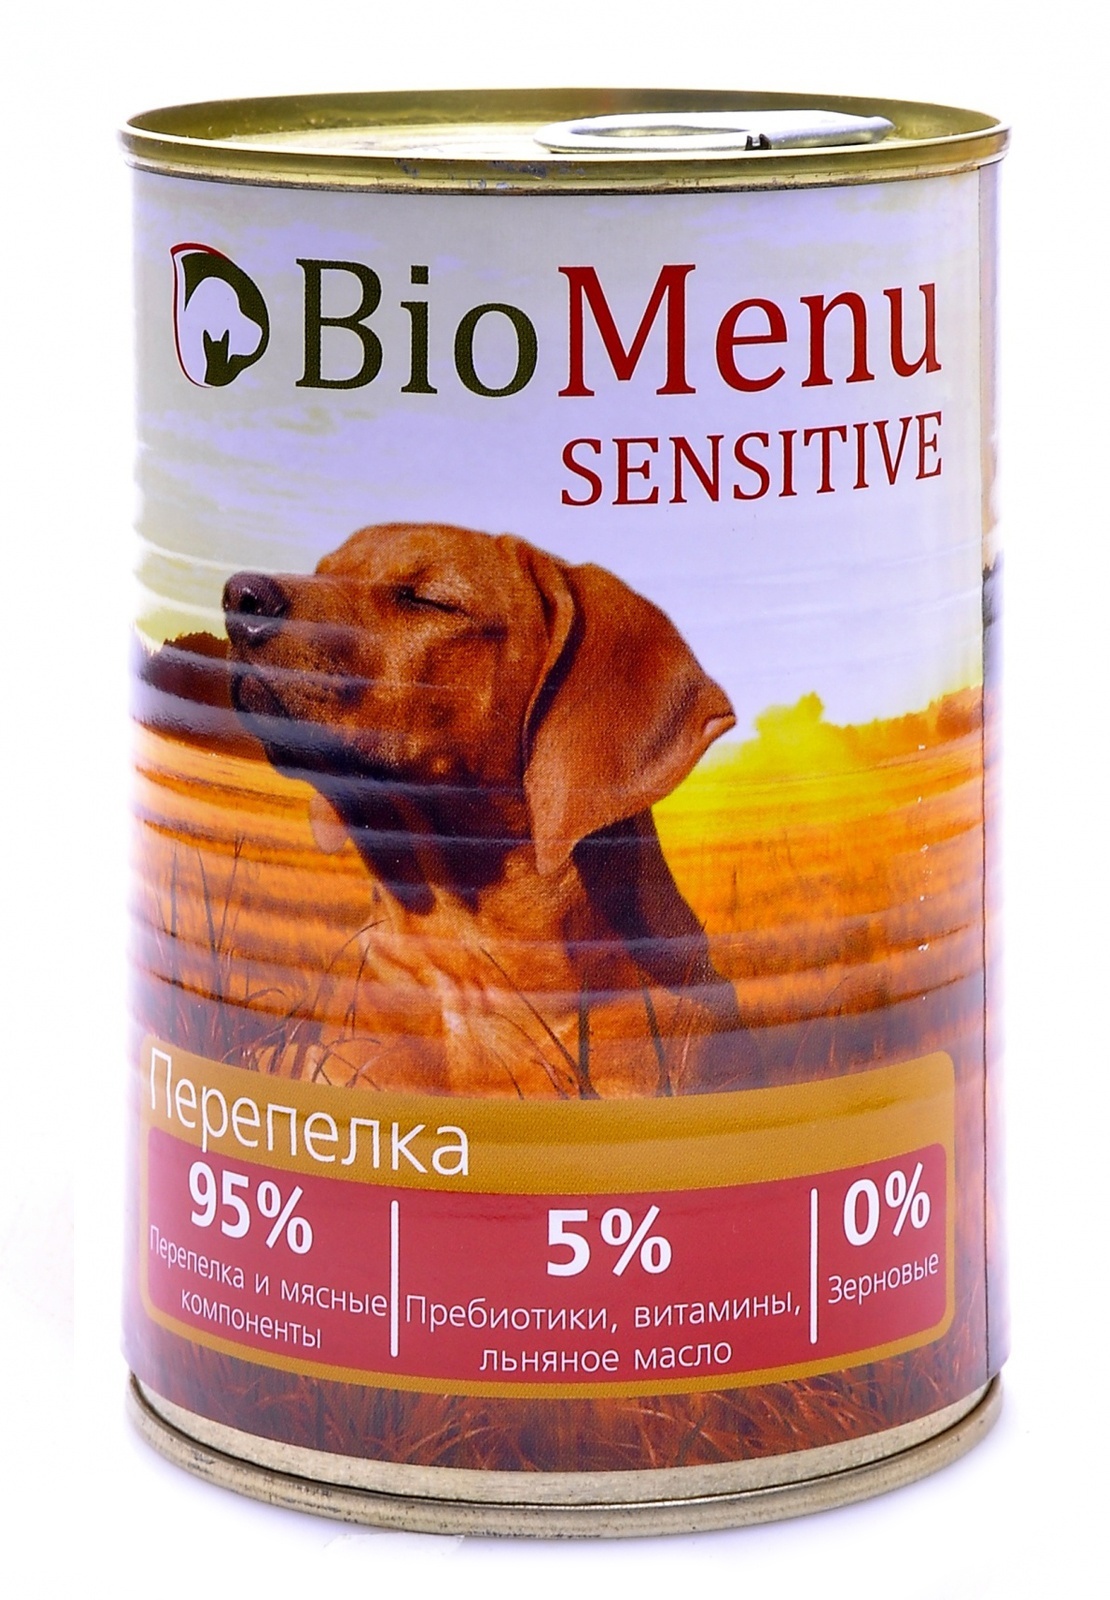 BioMenu BioMenu гипоаллергенные консервы для собак перепелка (410 г) консервы biomenu adult для собак цыпленок с ананасами 95% мясо 100гр